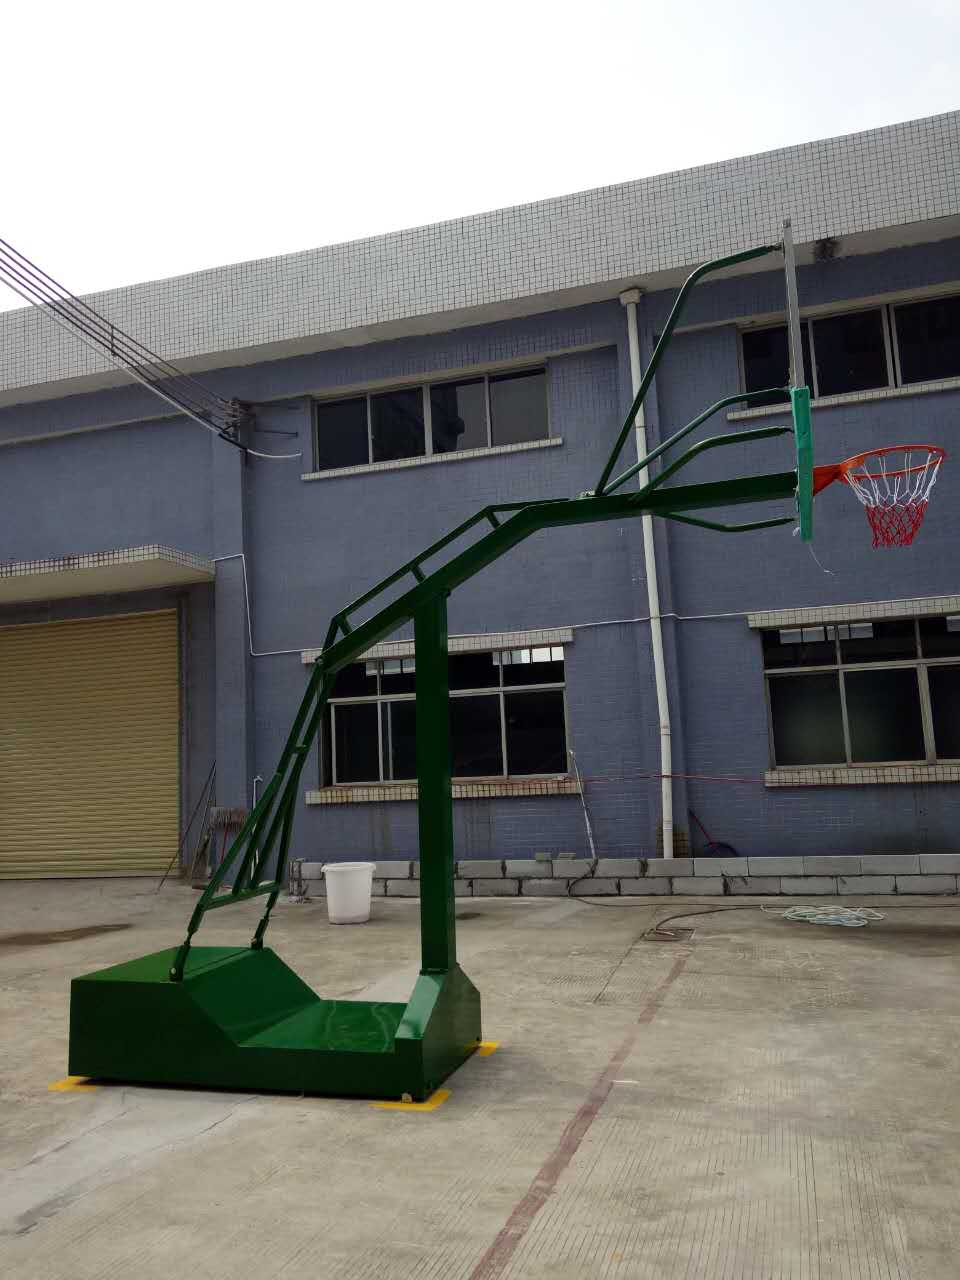 移动式篮球架海燕式篮球架室内外标准移动篮球架福永篮球架 篮球架、球板、球框、球网4